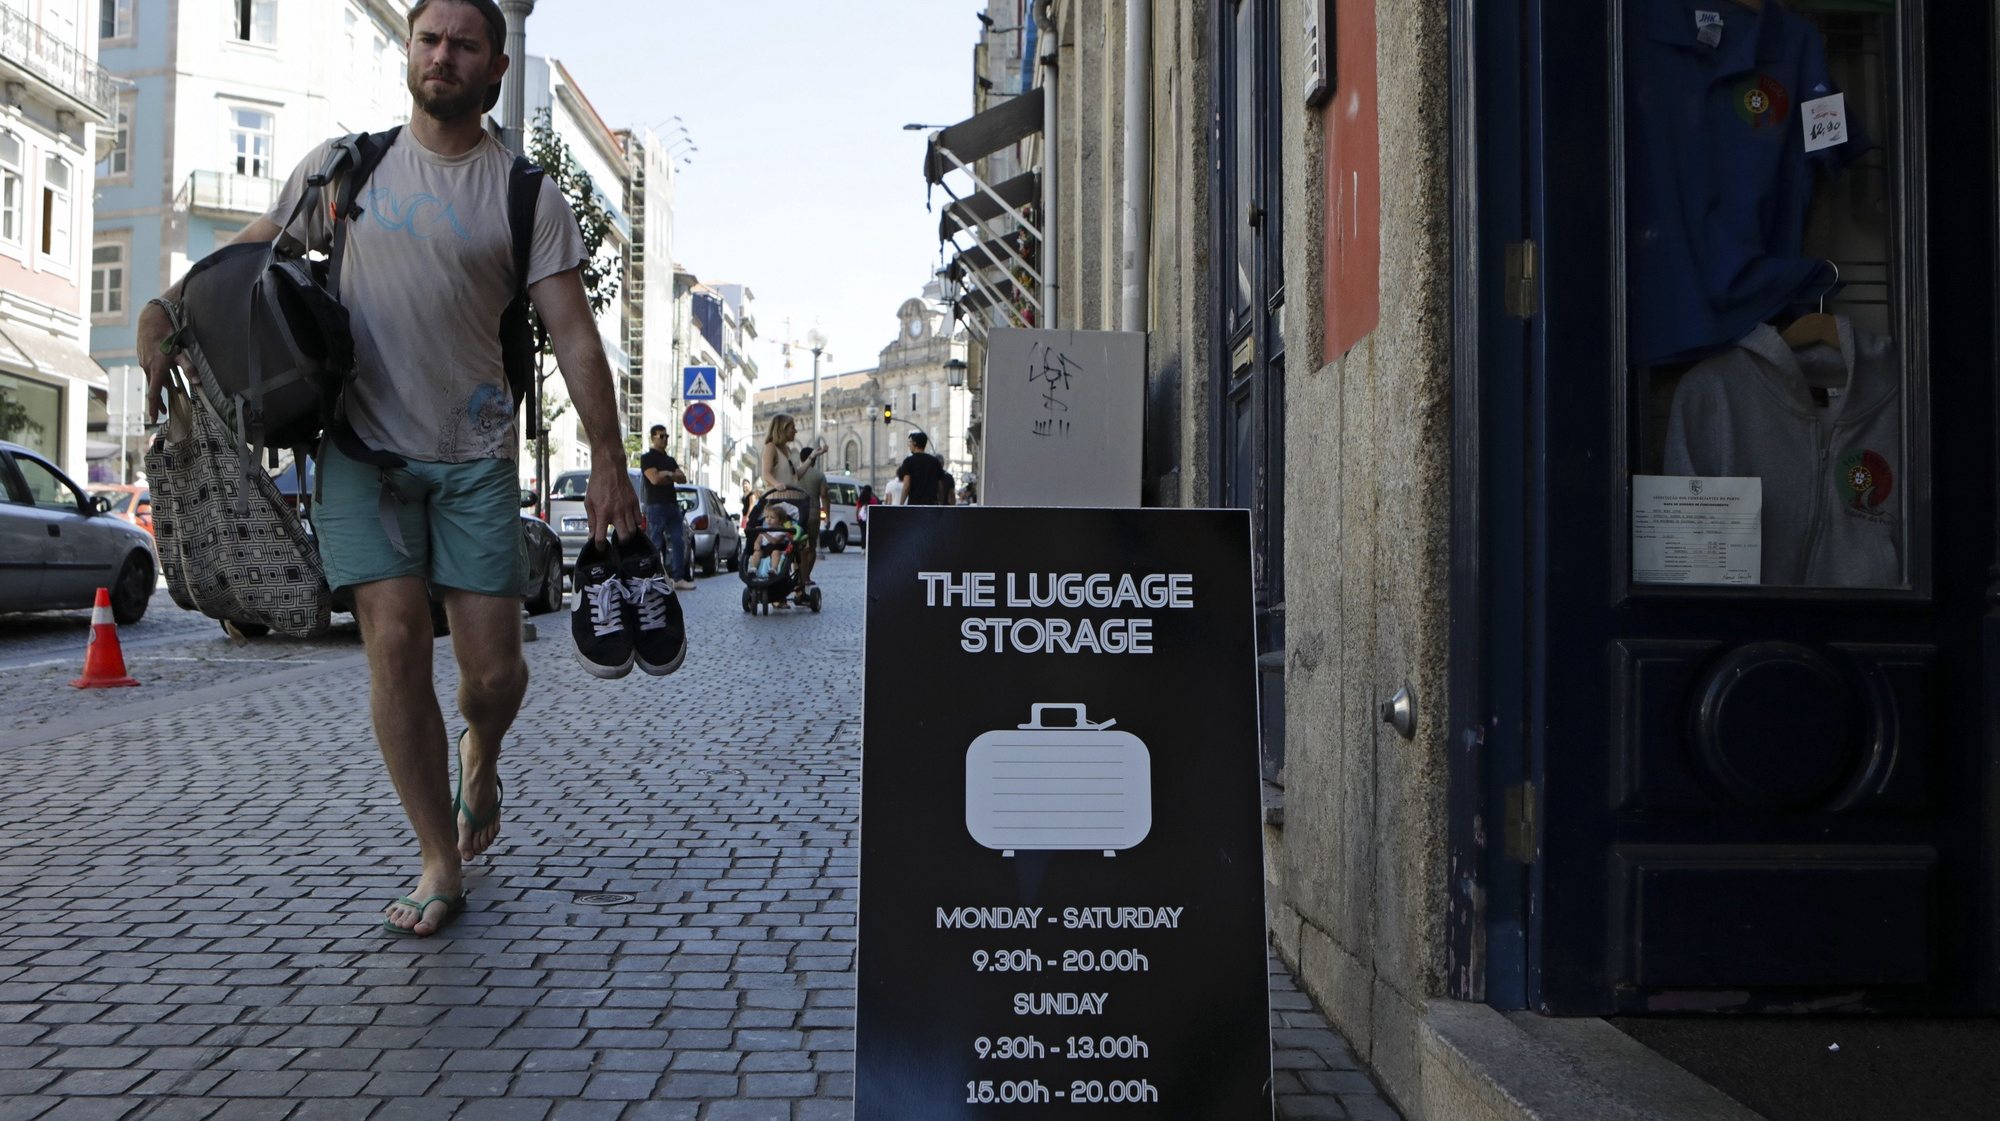 Estabelecimento na rua Mouzinho da Silveira para depósitar bagagens no Porto, 17 de agosto de 2017. O negócio dos ‘lockers’, cacifos para guardar bagagens, floresce no Porto para colmatar uma lacuna no mercado do alojamento local, invadindo cafés, lojas de ‘design’ ou de aluguer de bicicletas e ‘scooters’ ou estações de metro e comboios. (ACOMPANHA TEXTO DE 21/08/2017) JOSÉ COELHO/LUSA